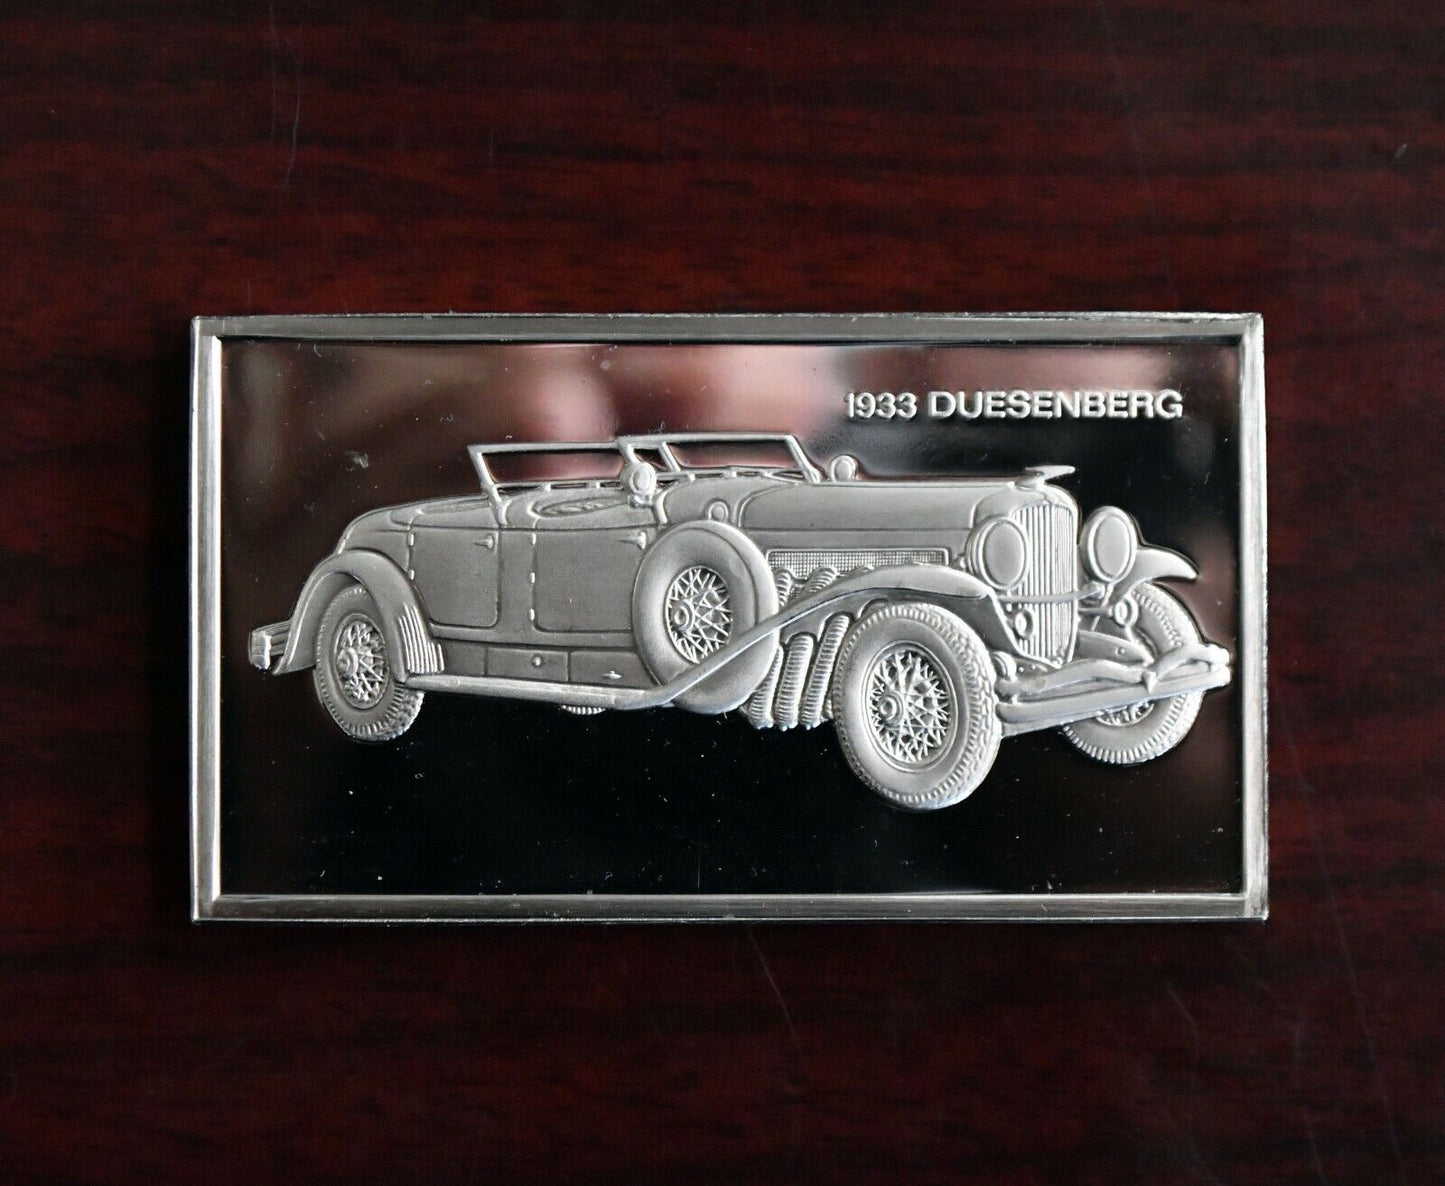 1933 Duesenberg Centennial Car Collection 1000 Grains Sterling Franklin Mint Bar